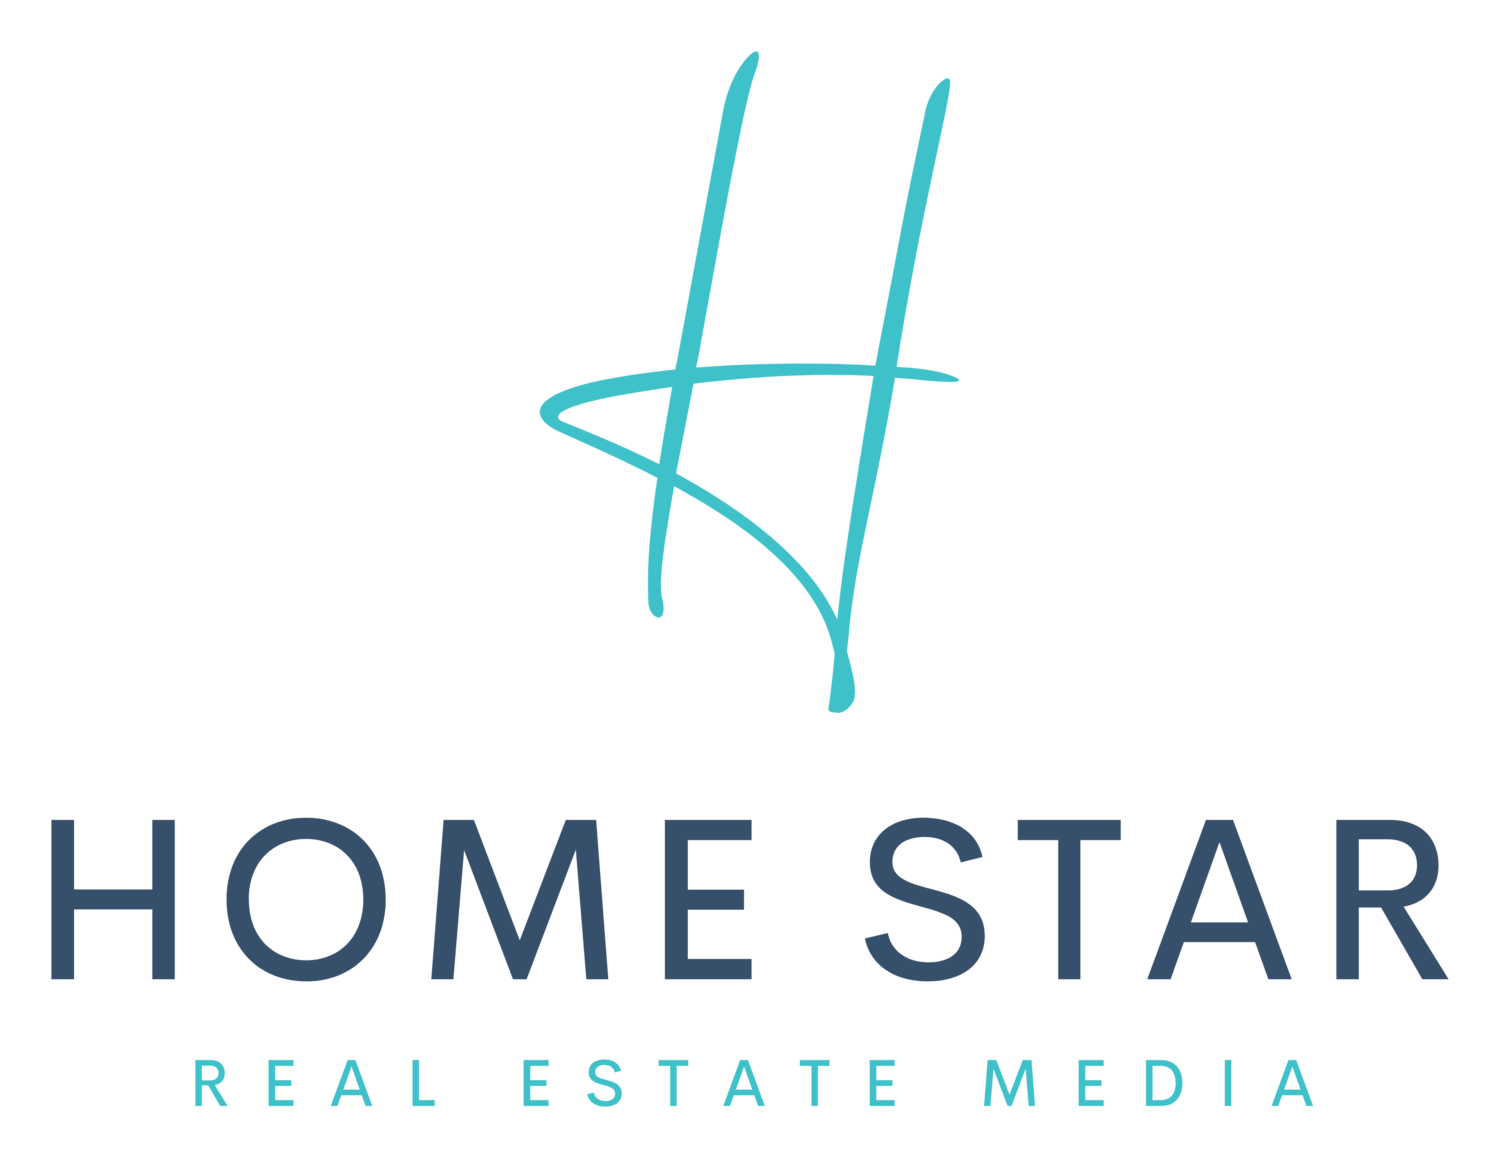 HomeStar Real Estate Media